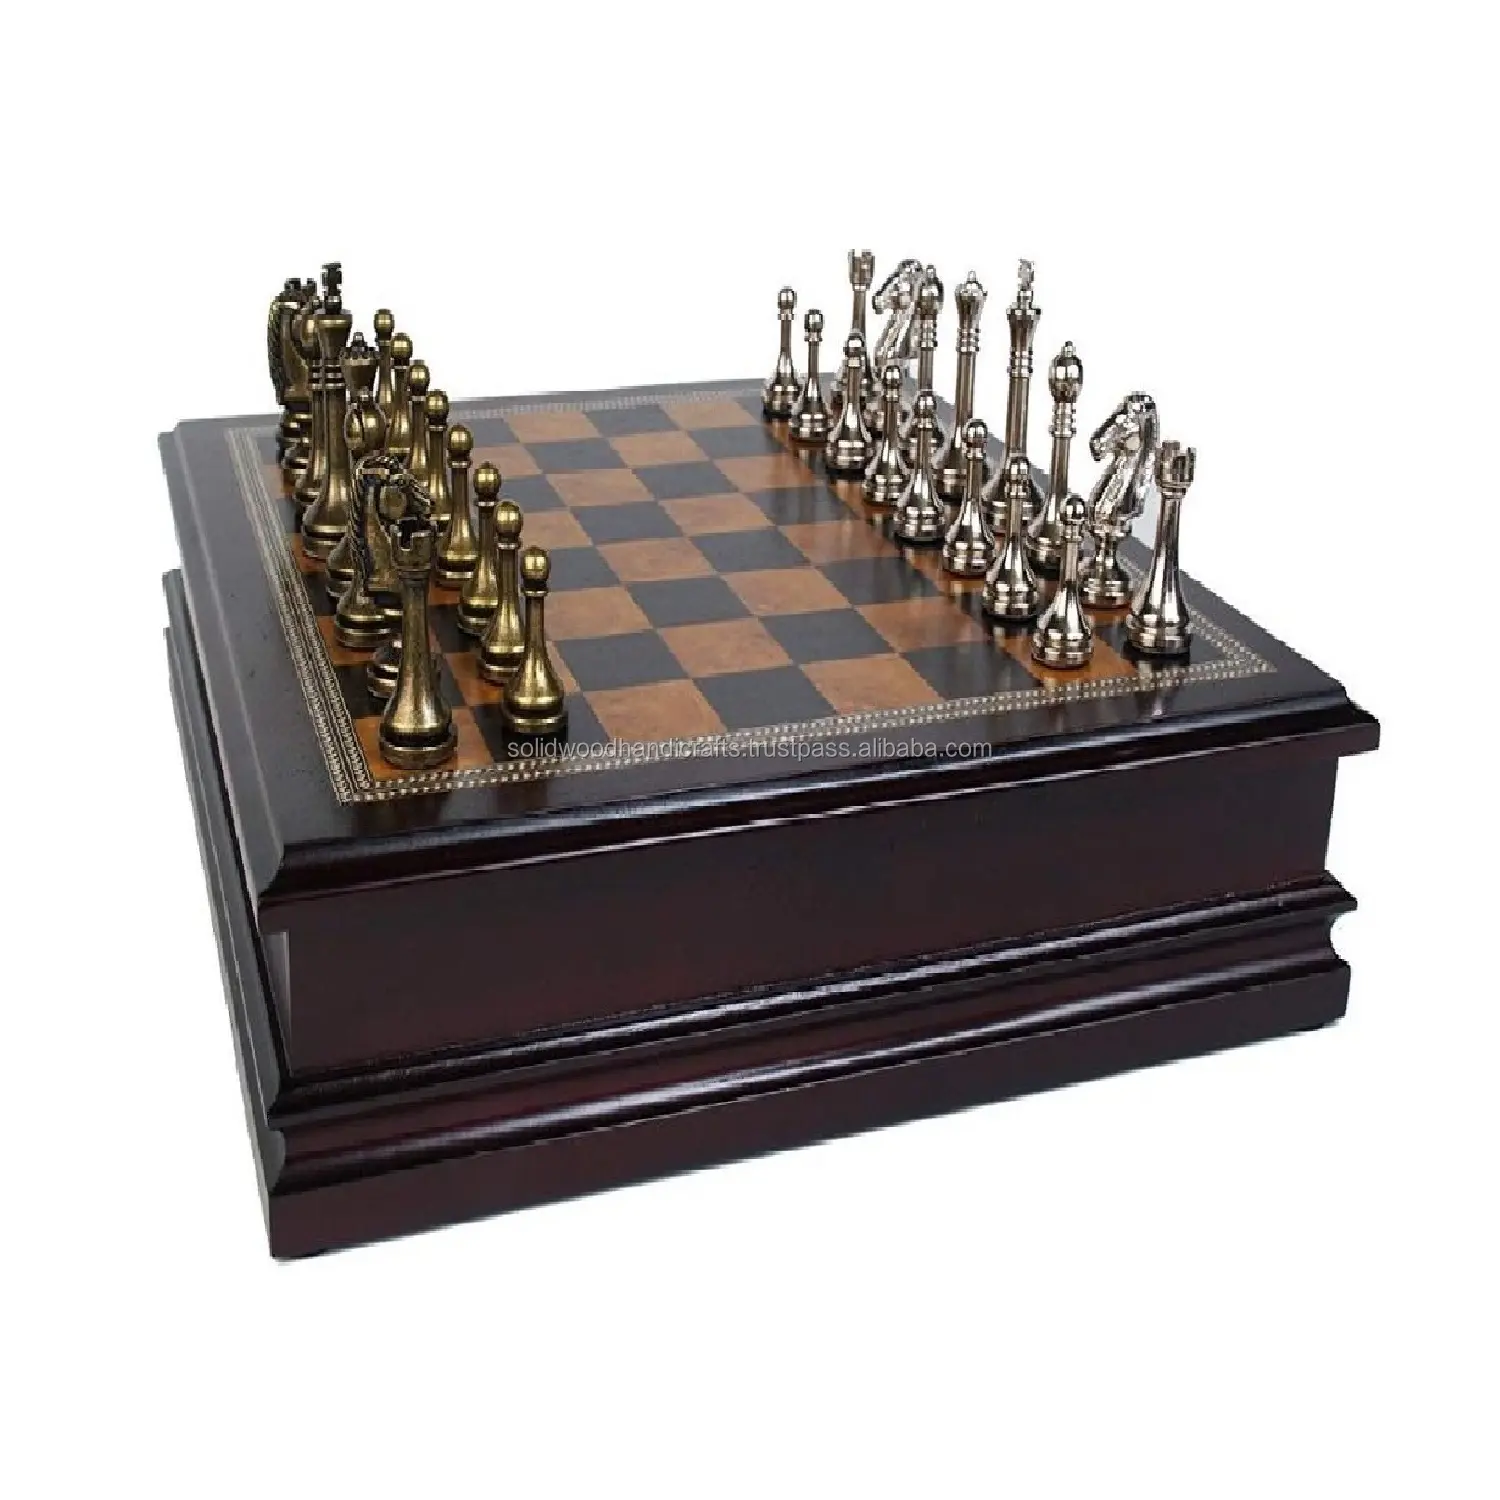 Última artesanía de madera exclusivo ajedrez juego tema